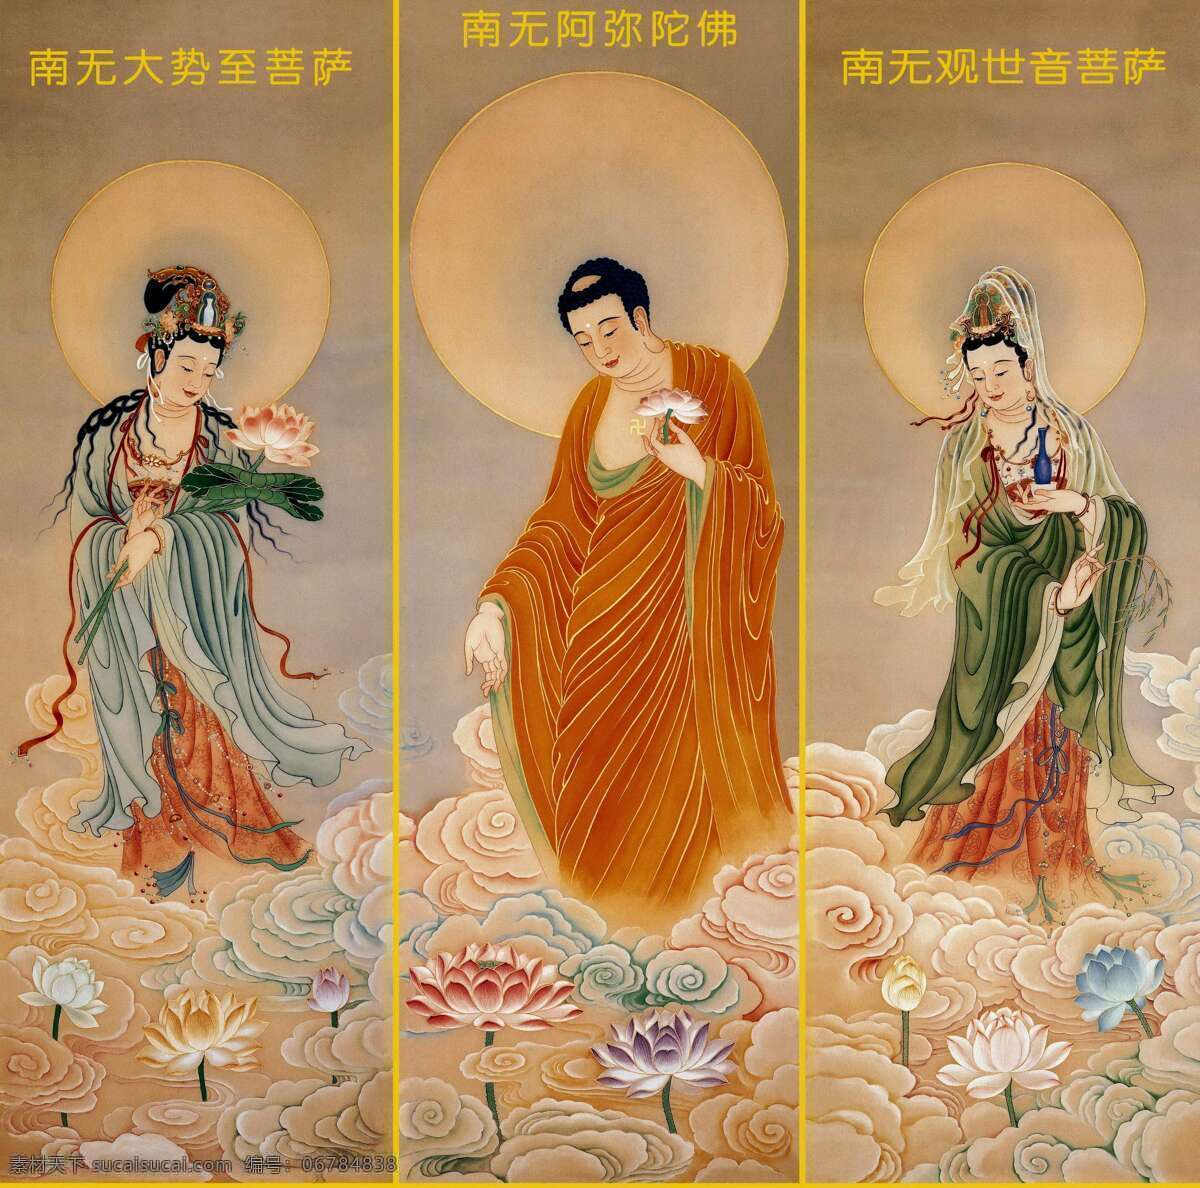 佛像图片 佛像 菩萨 三个菩萨 佛教 简介 文化艺术 宗教信仰